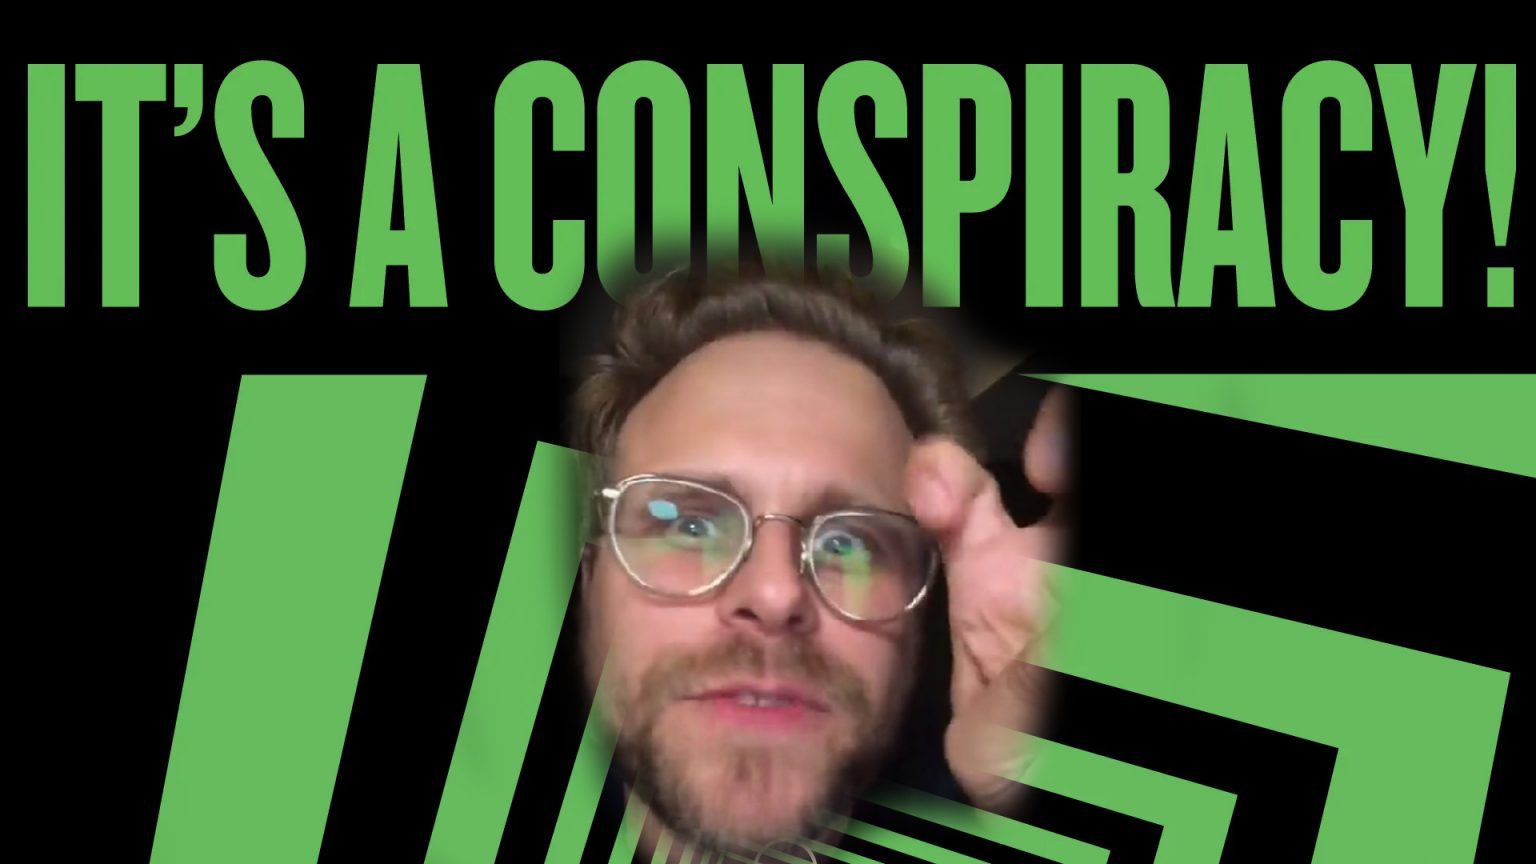 Adam Conover ha hecho viral su vídeo reacción criticando al posible monopolio de Microsoft tras la compra de Bethesda y Activision.